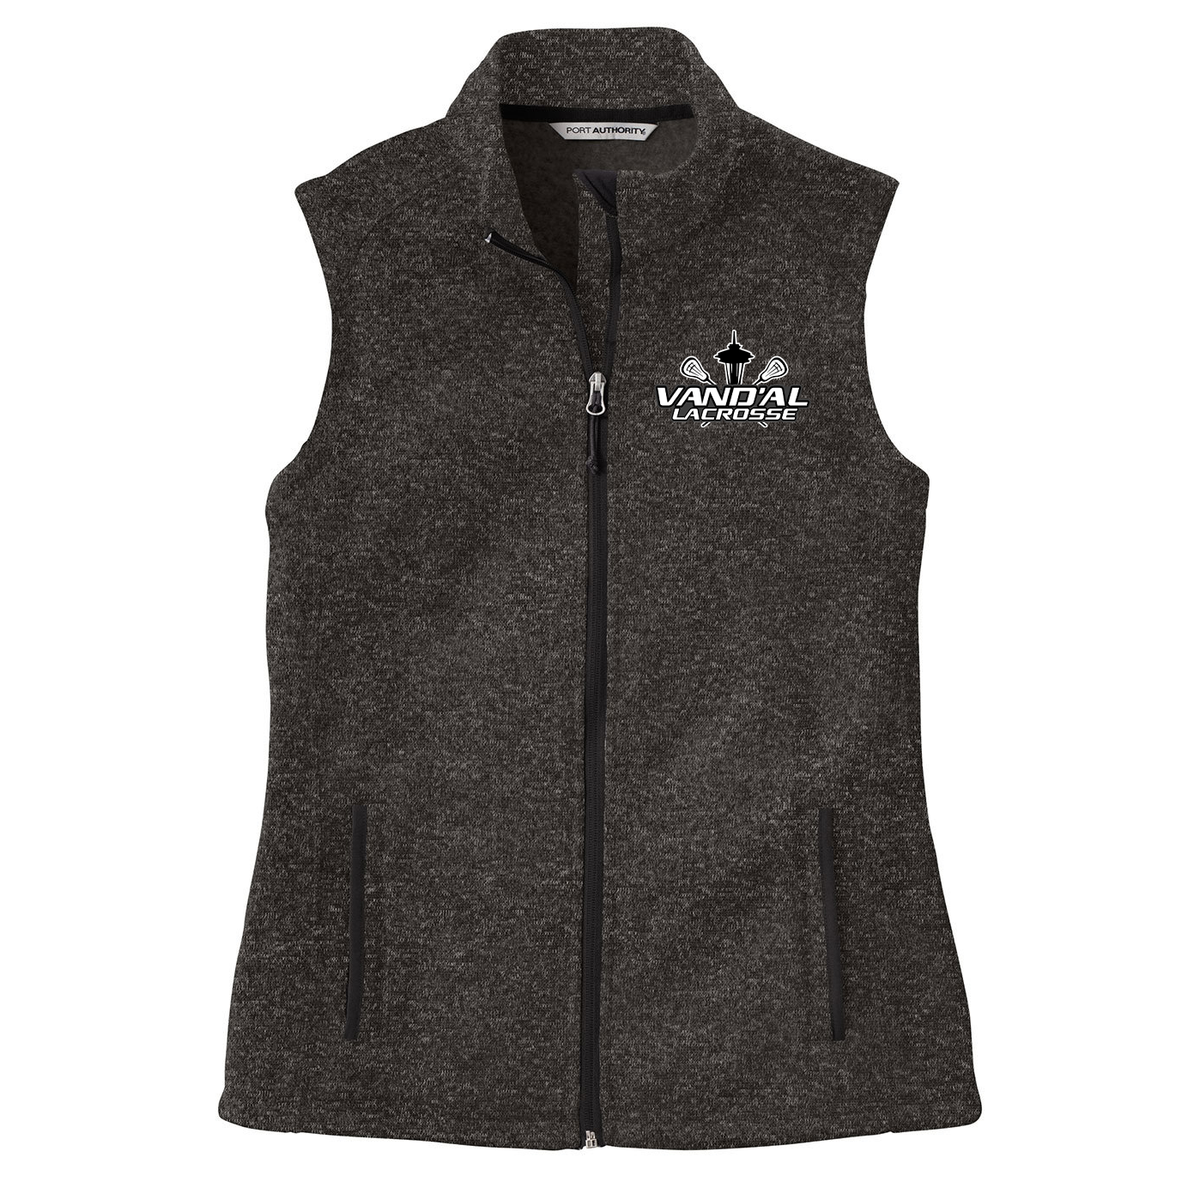 Vand'al Lacrosse Womens Fleece Vest